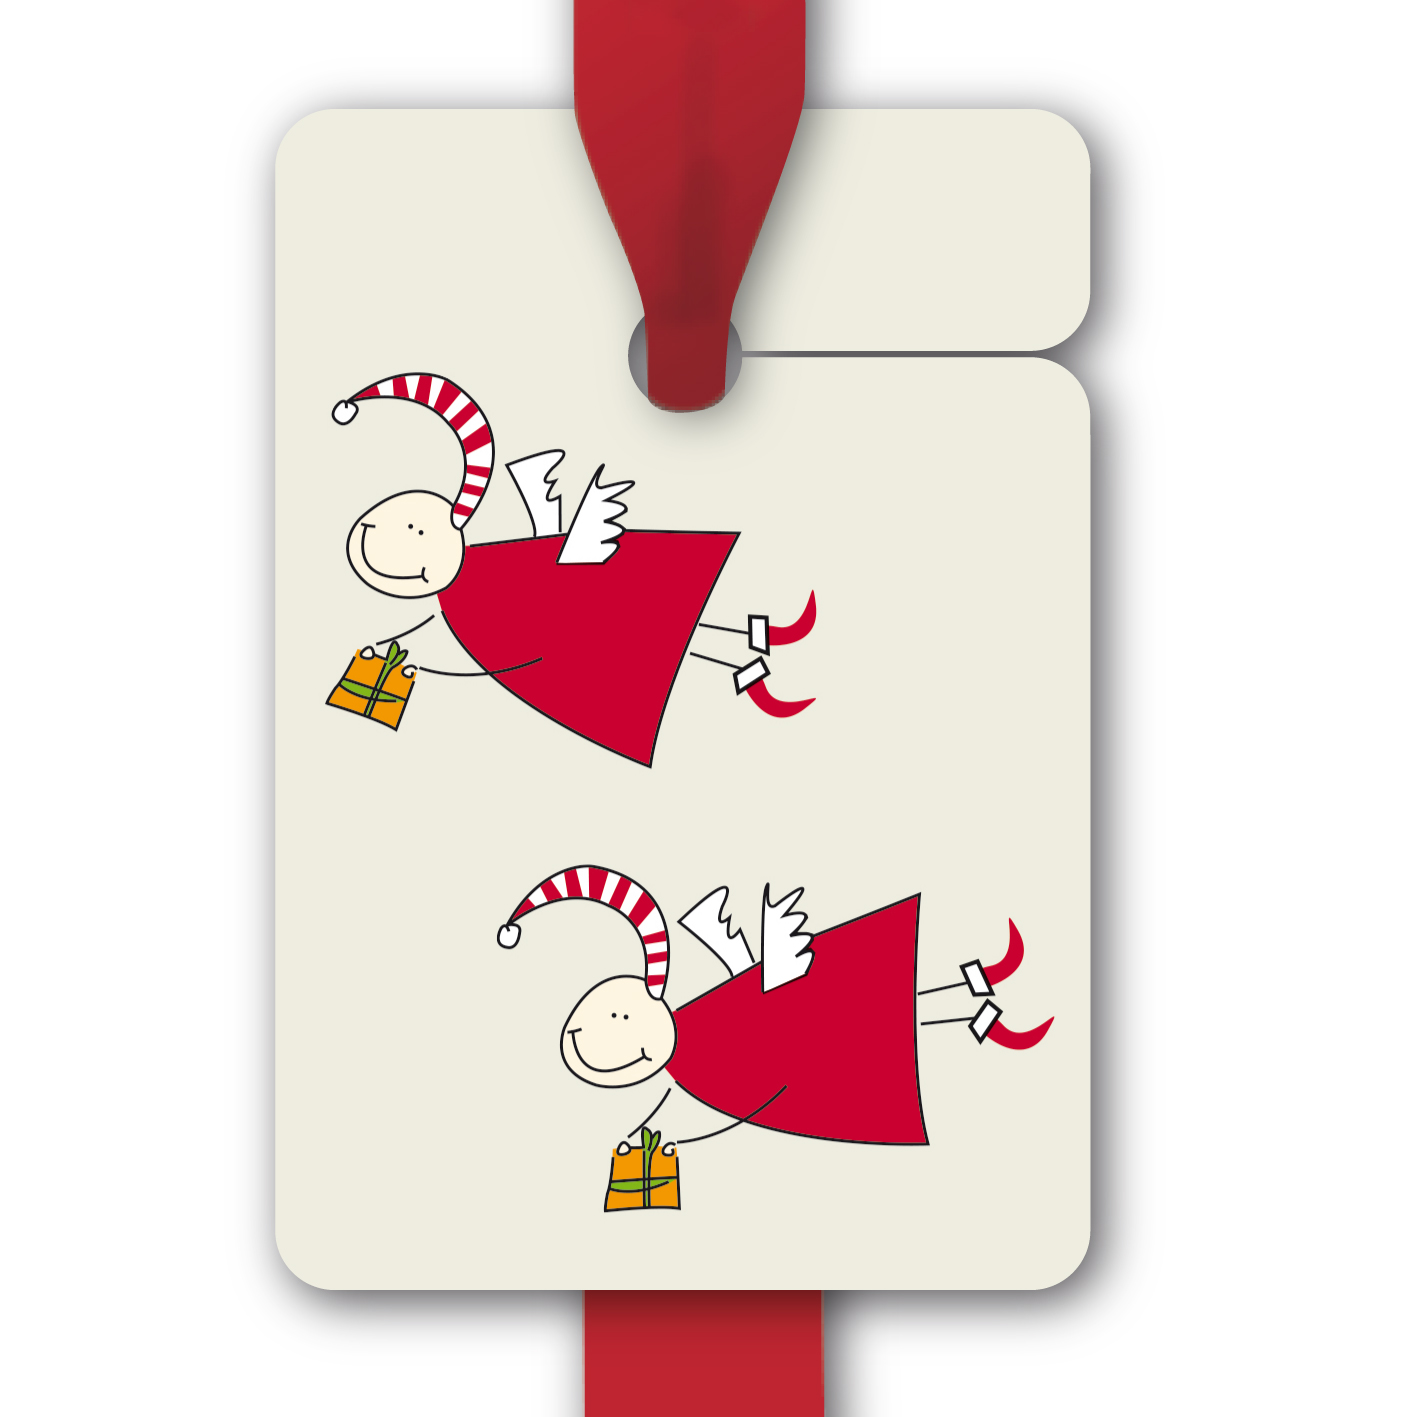 Hänge Etiketten: 8 Weihnachts Geschenkanhänger aus unserer Weihnachts Papeterie in beige